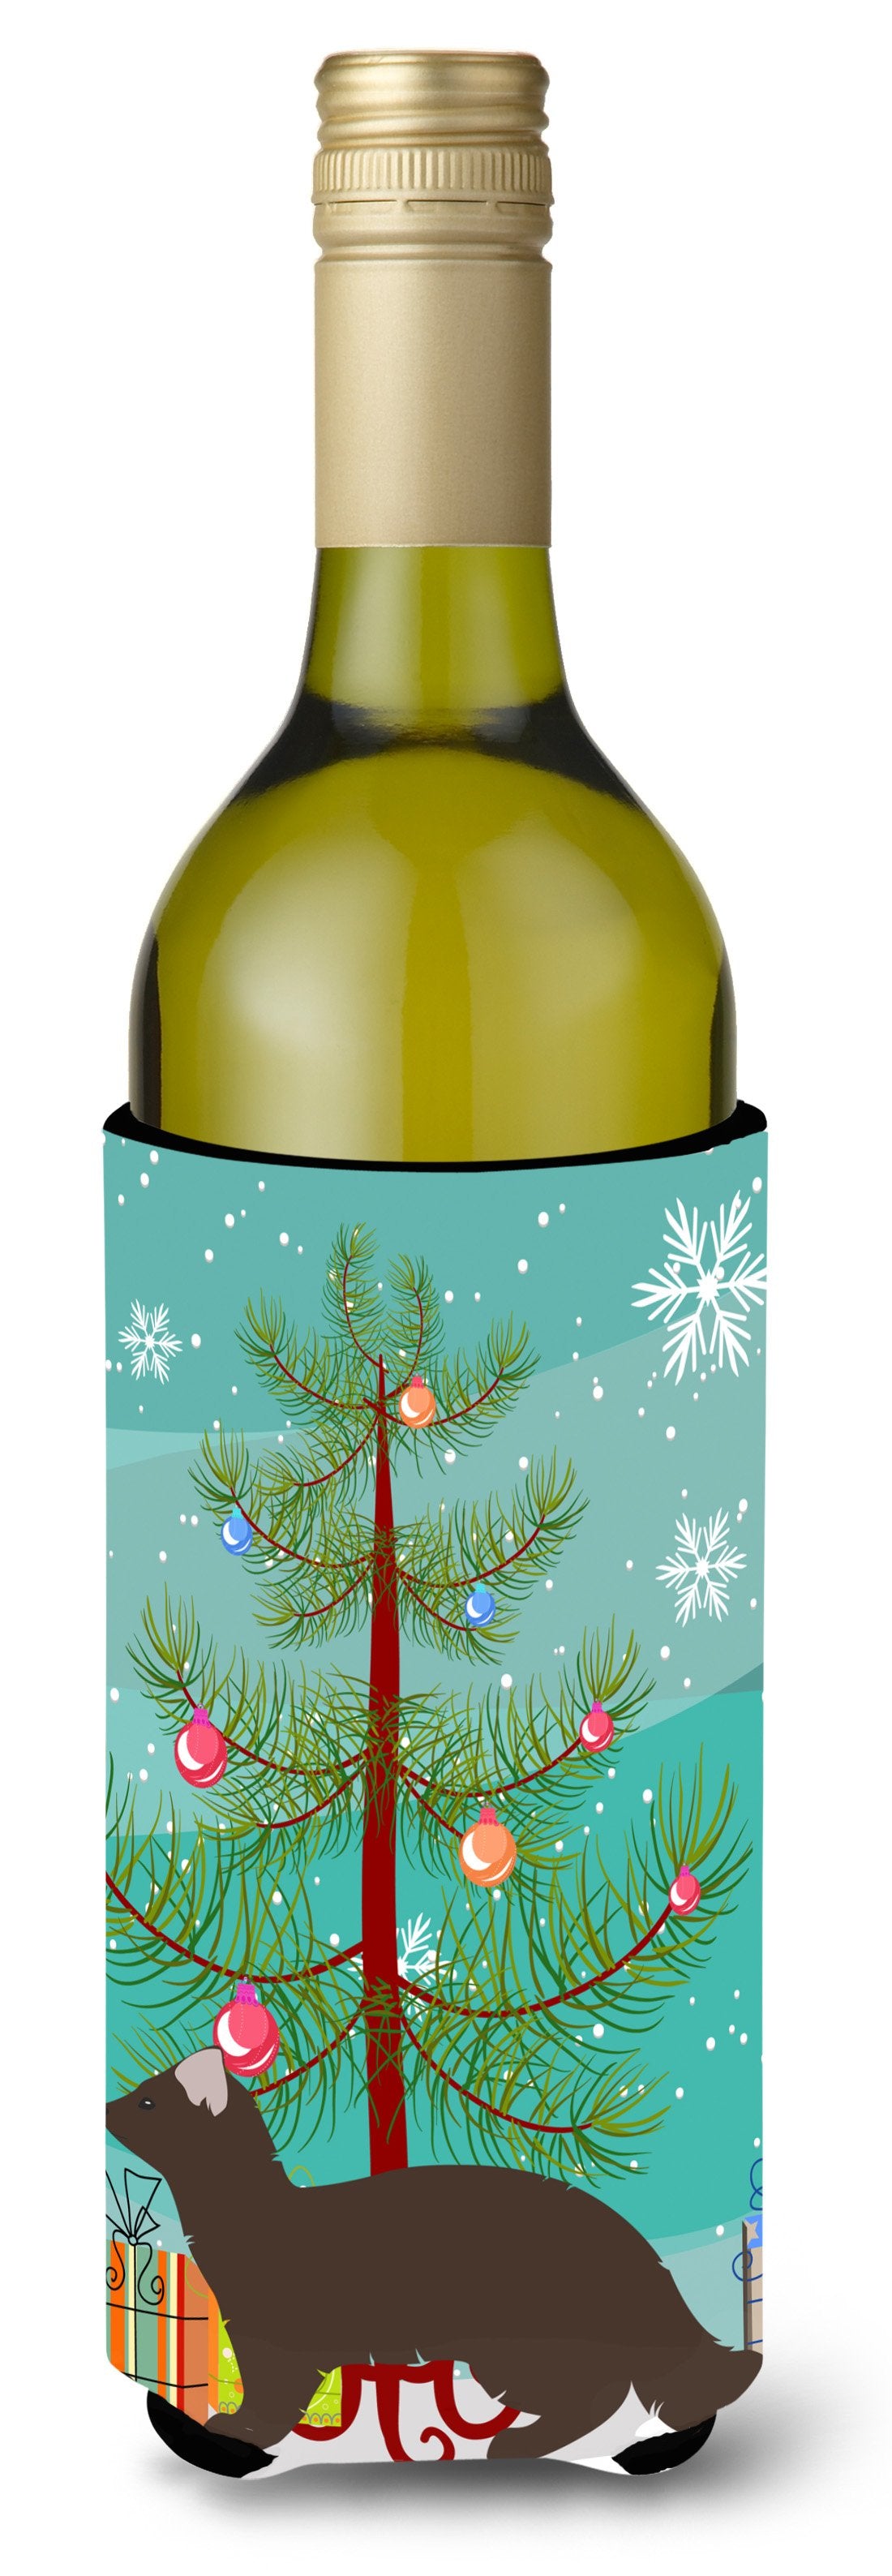 Sable Marten Christmas Wine Bottle Beverge Insulator Hugger BB9236LITERK by Caroline's Treasures